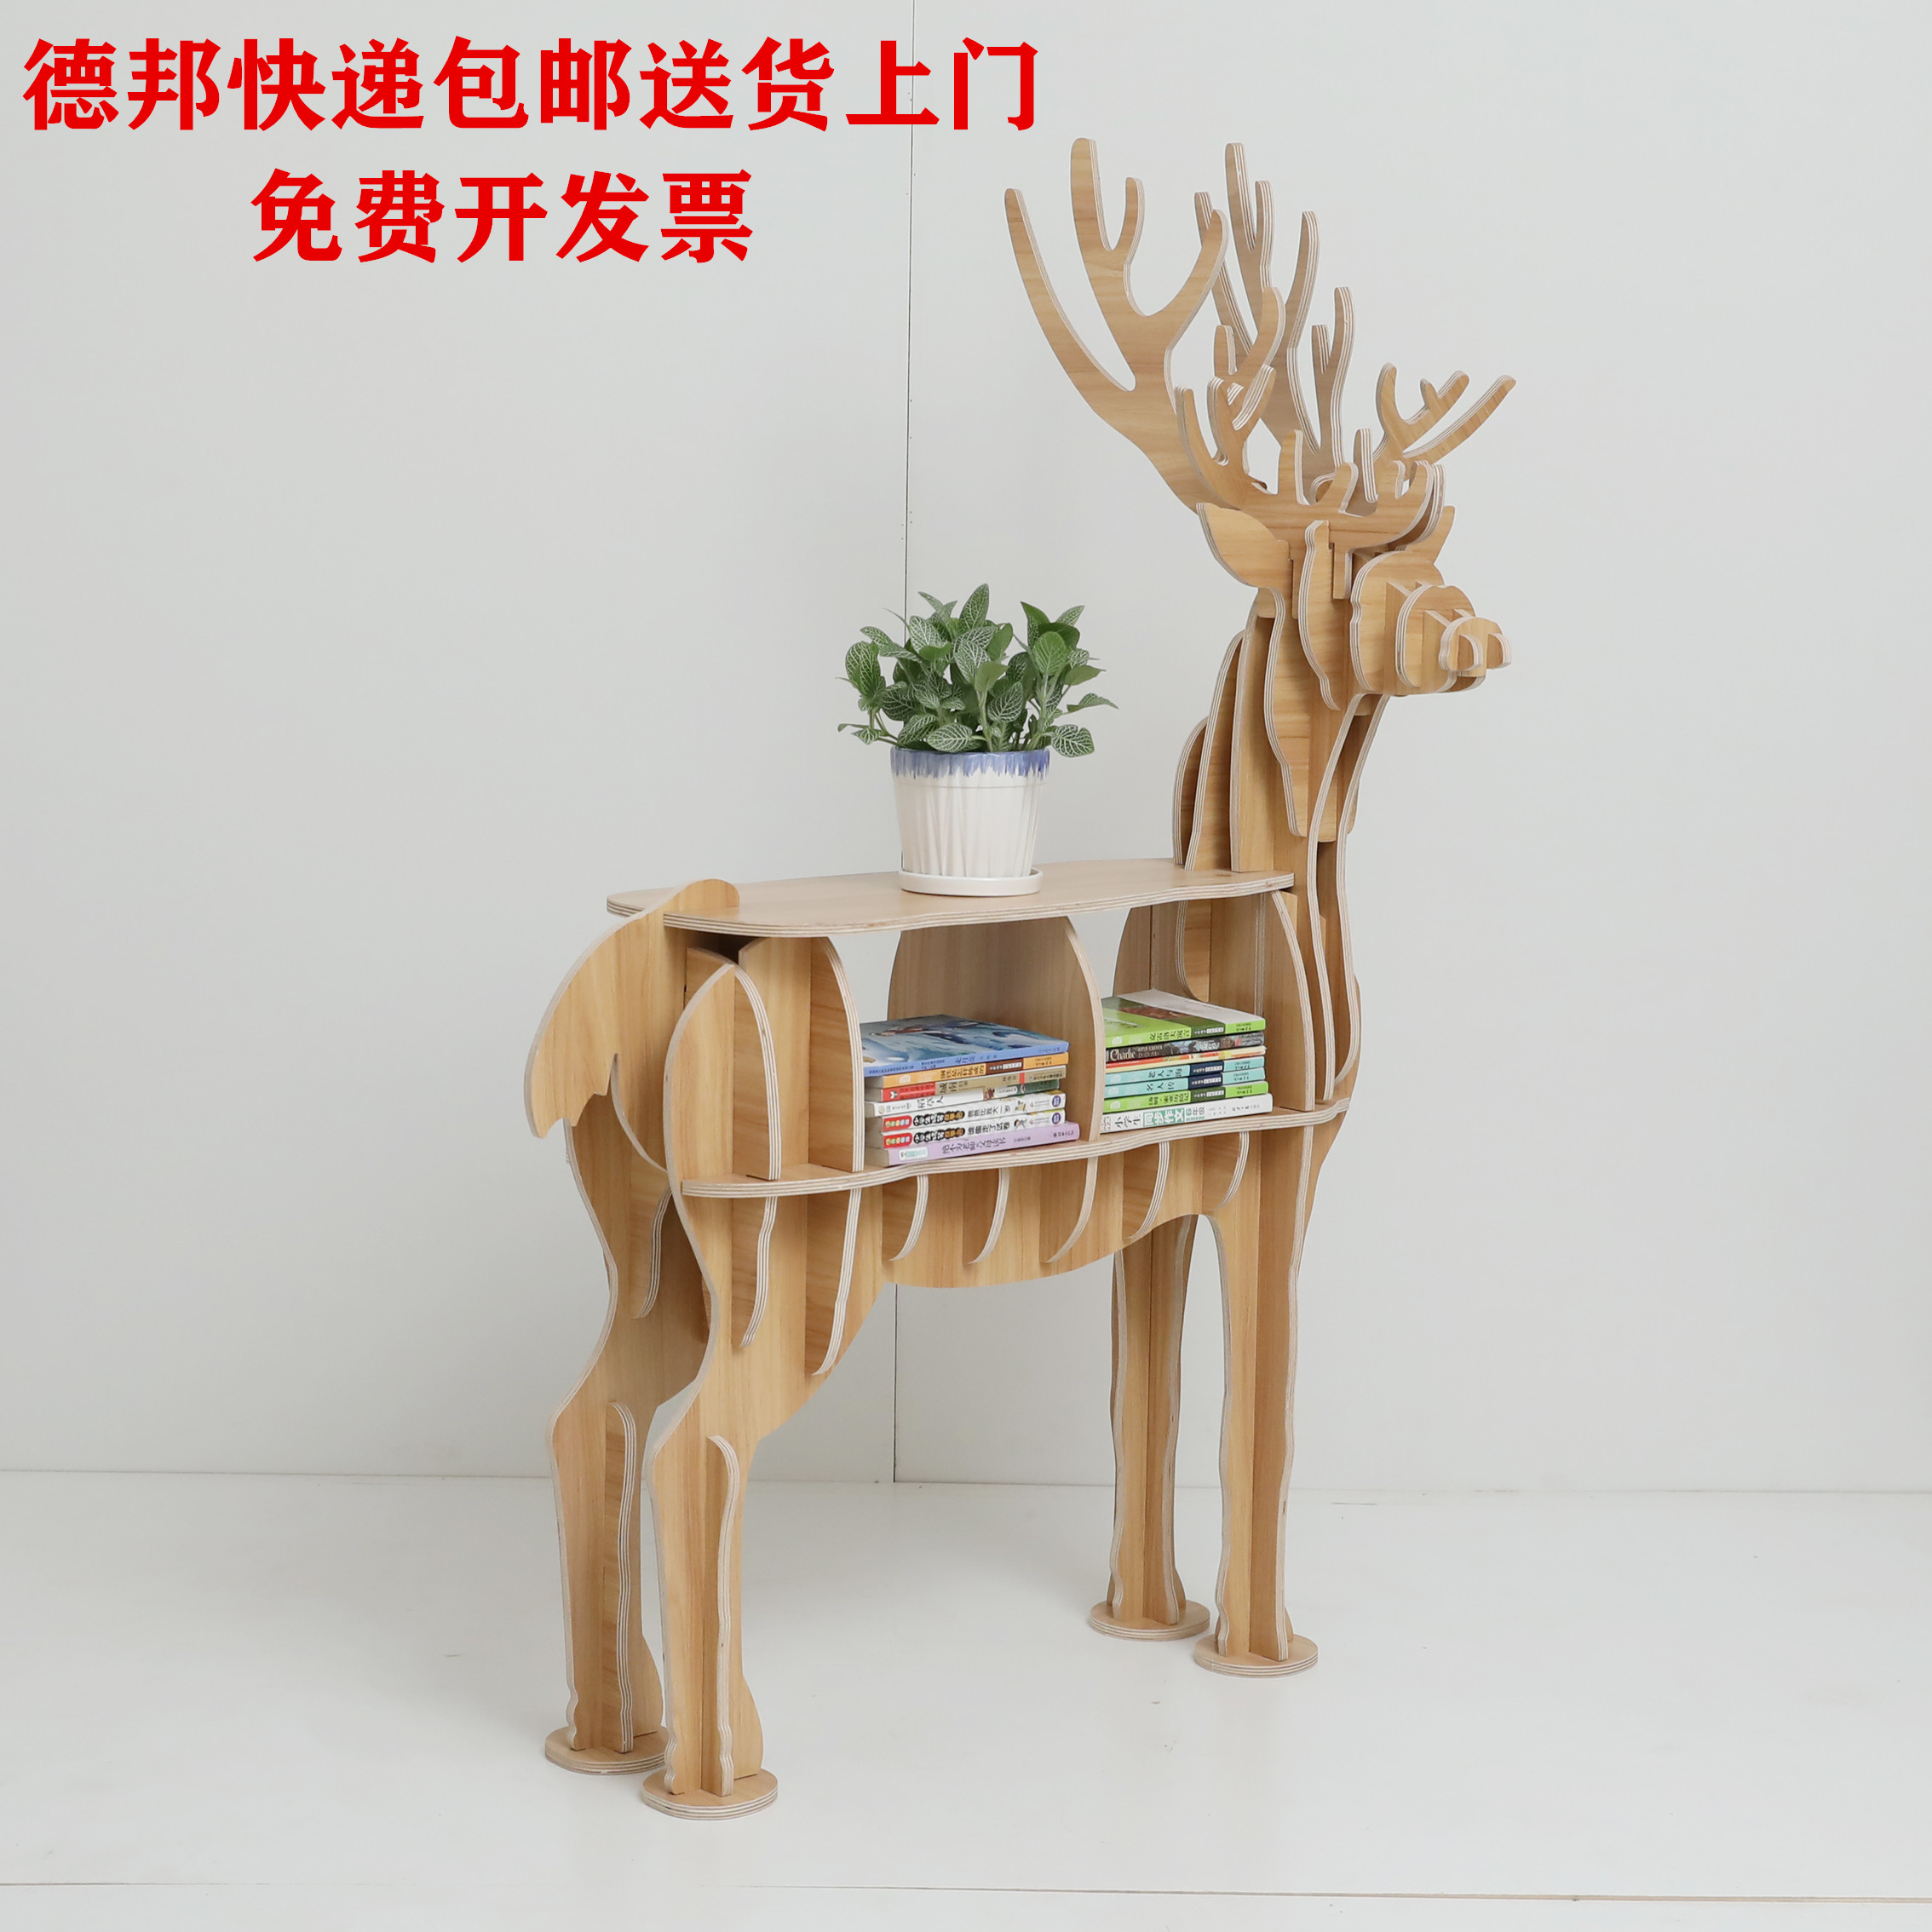 创意木质北欧麋鹿书架动物造型边几幼儿园学校客厅置物架软装摆件